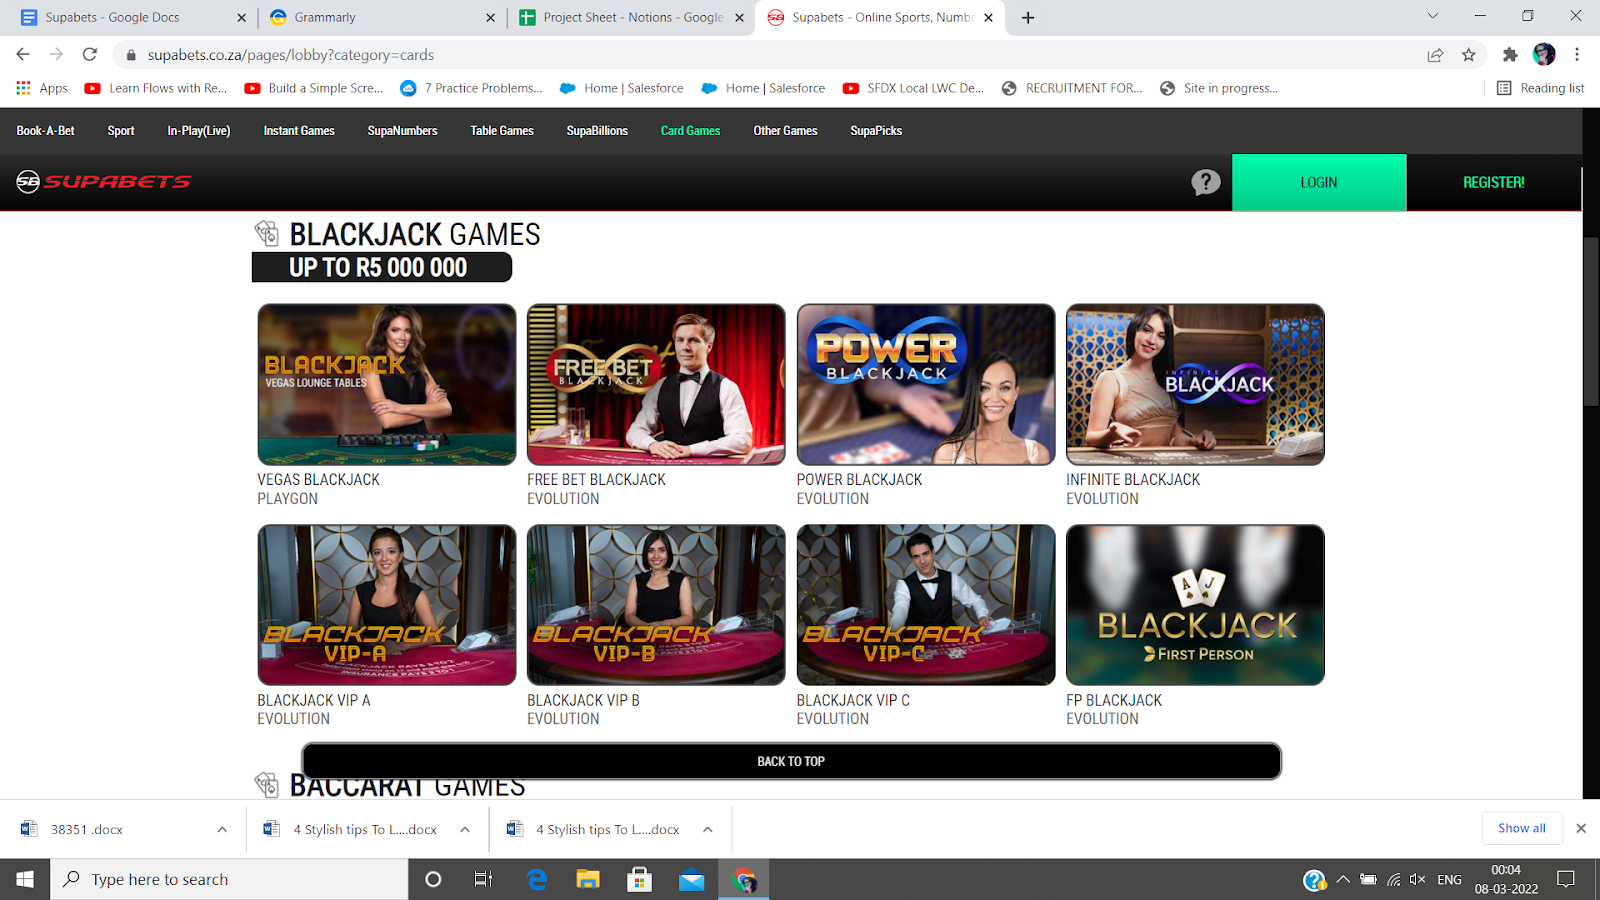 Blackjack games offered by Supabets site.